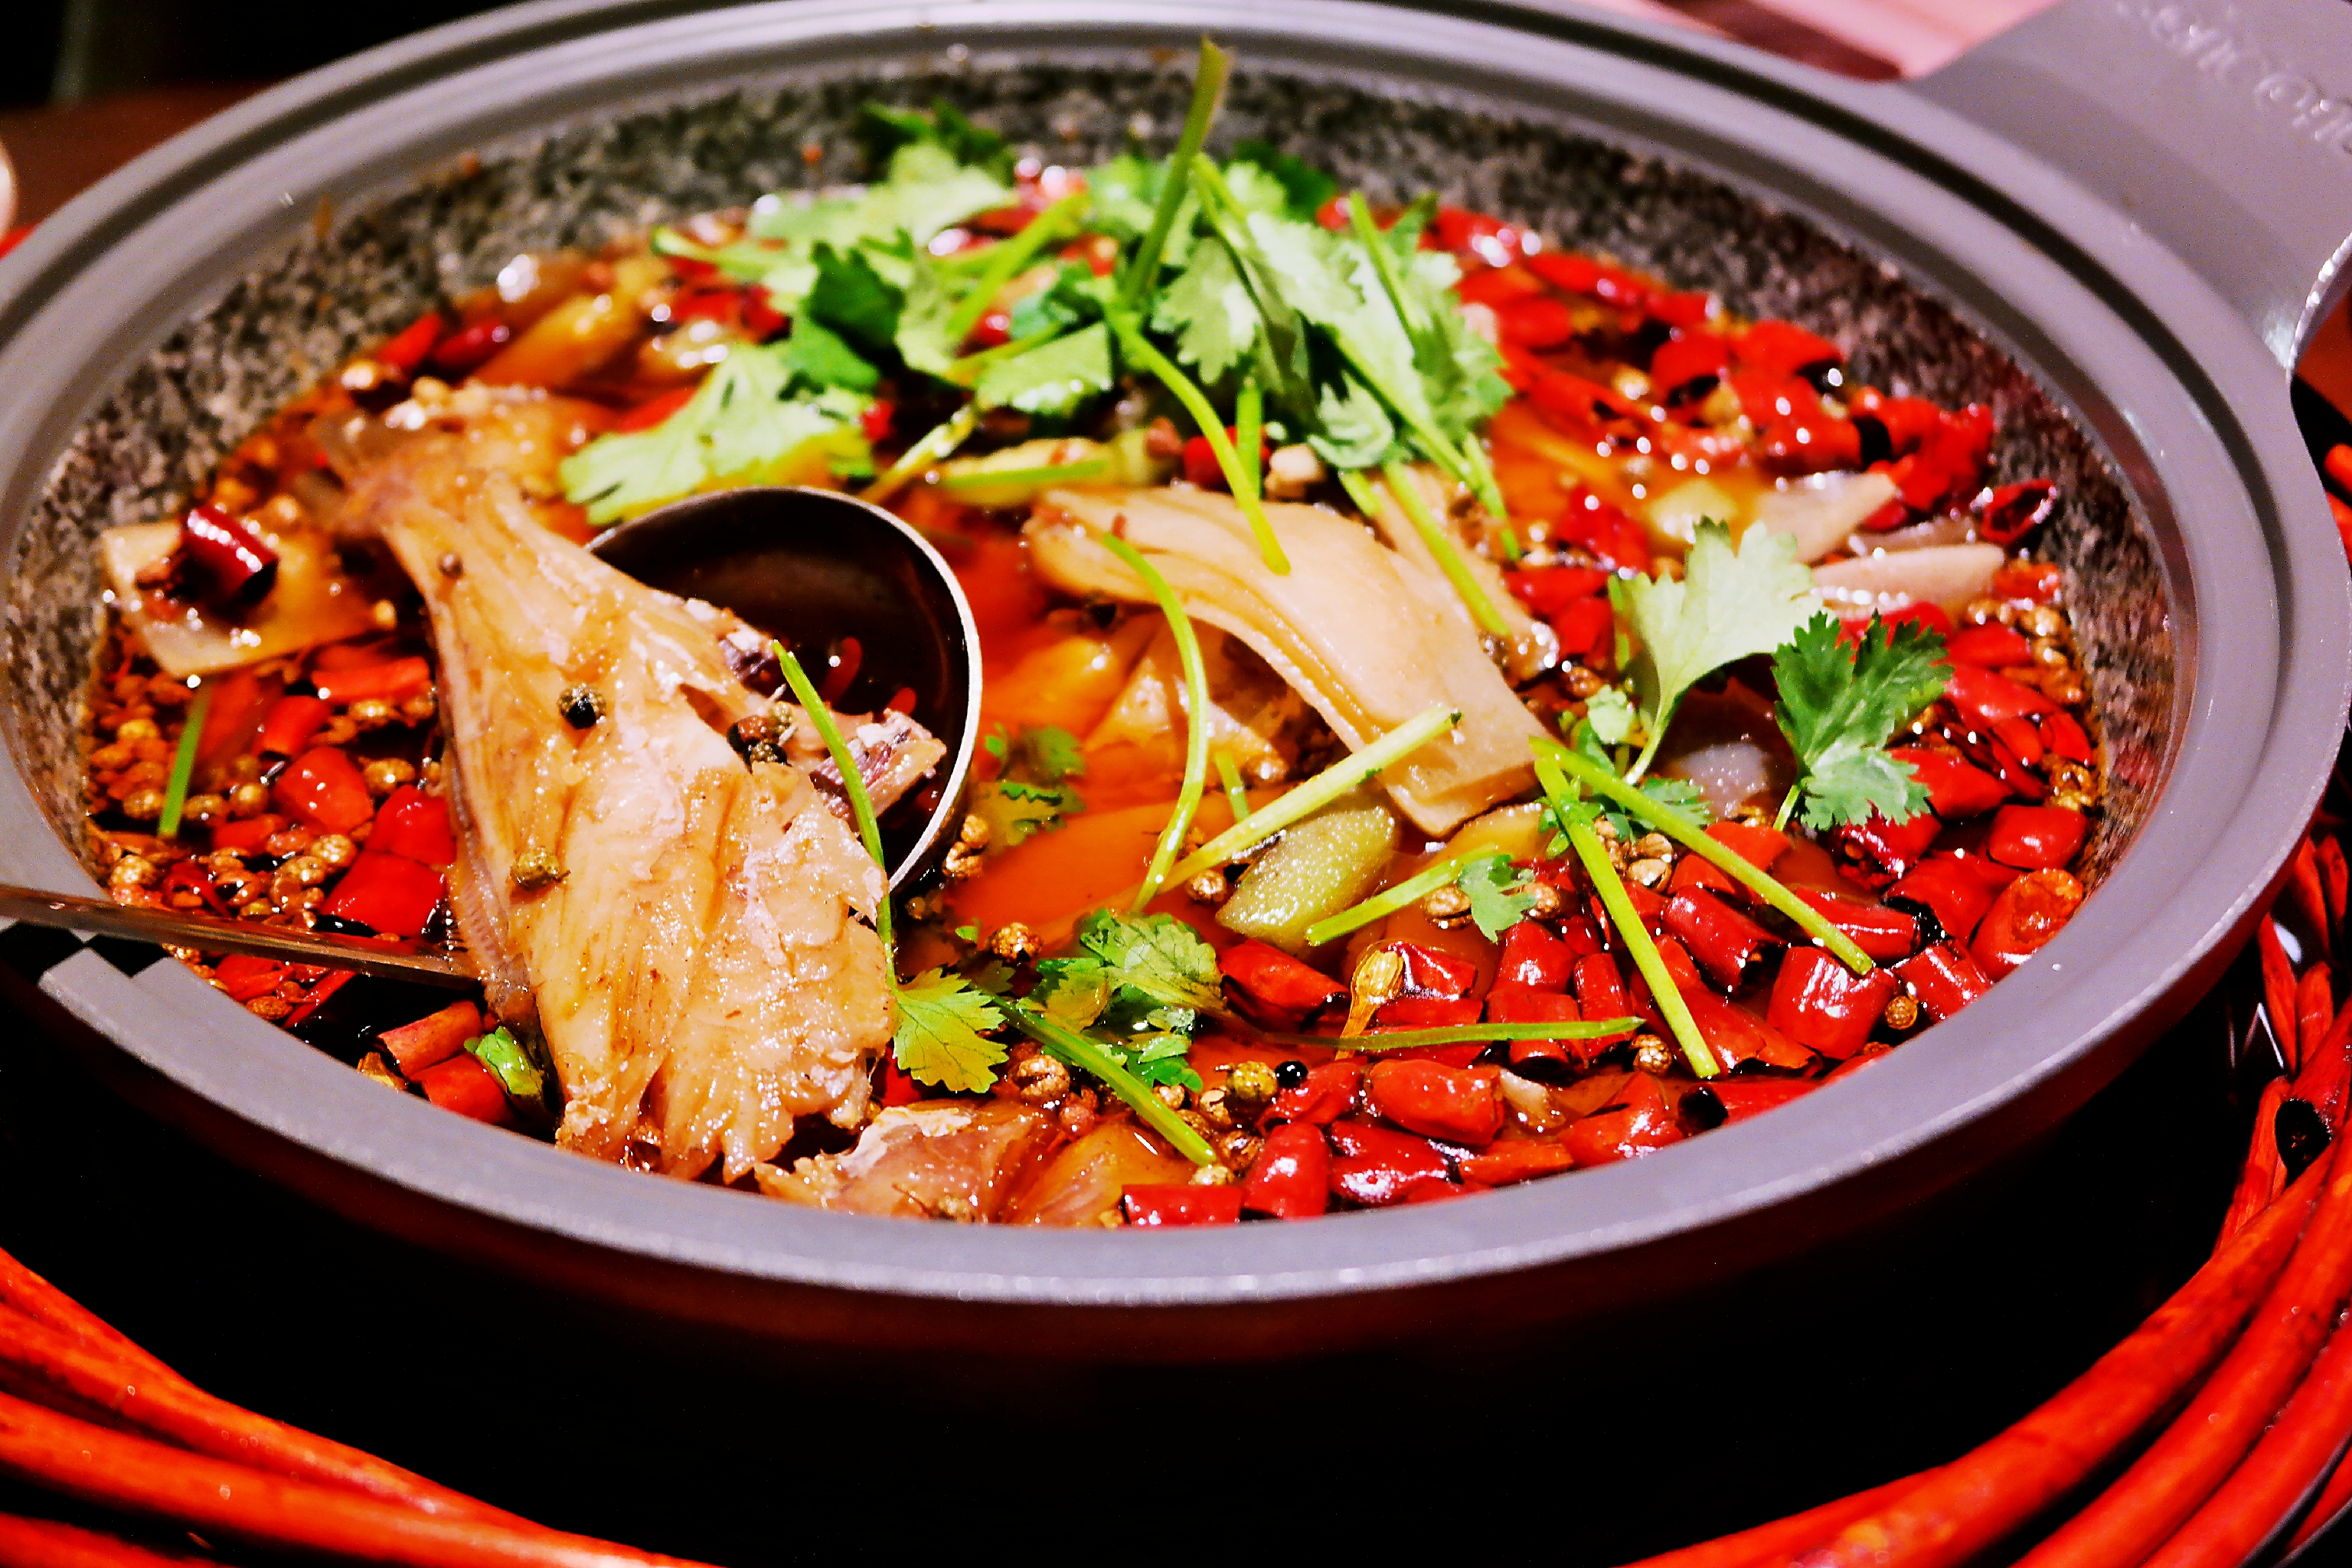 在重庆,耗儿鱼可谓是火锅里的一道必备食材,在麻辣鲜香中过足瘾